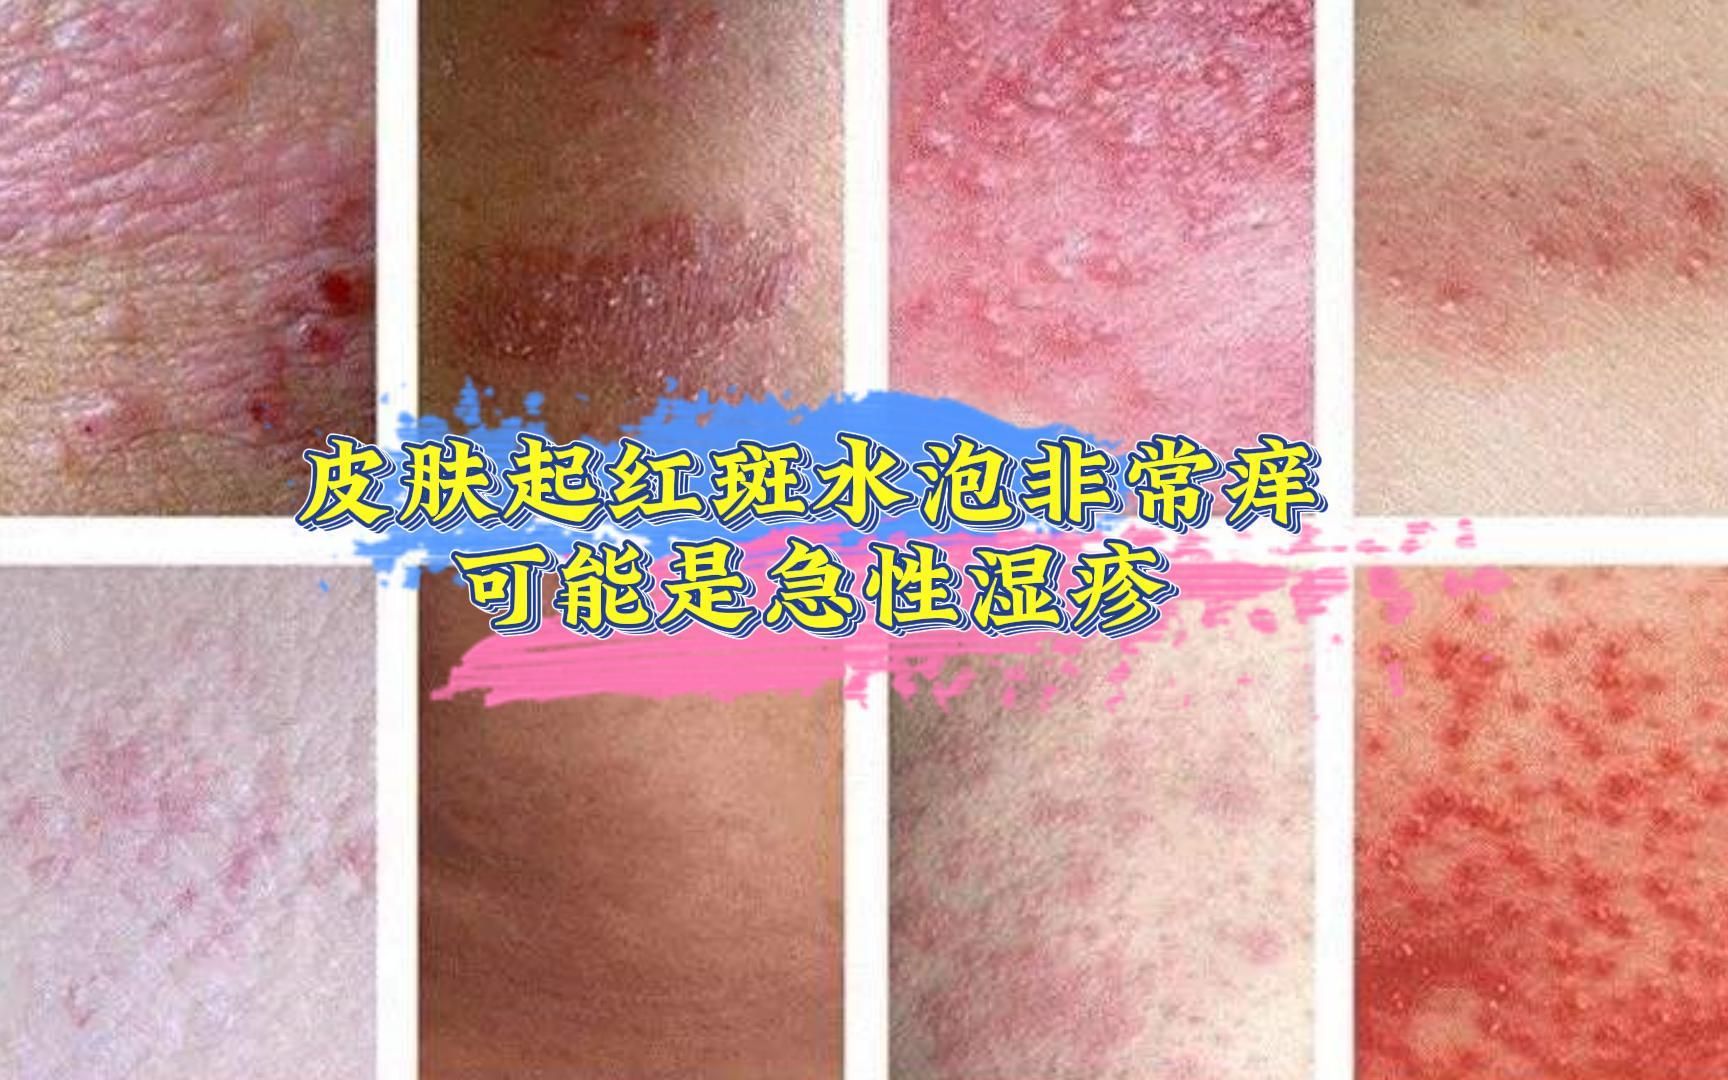 皮肤起红斑水泡非常痒 可能是急性湿疹